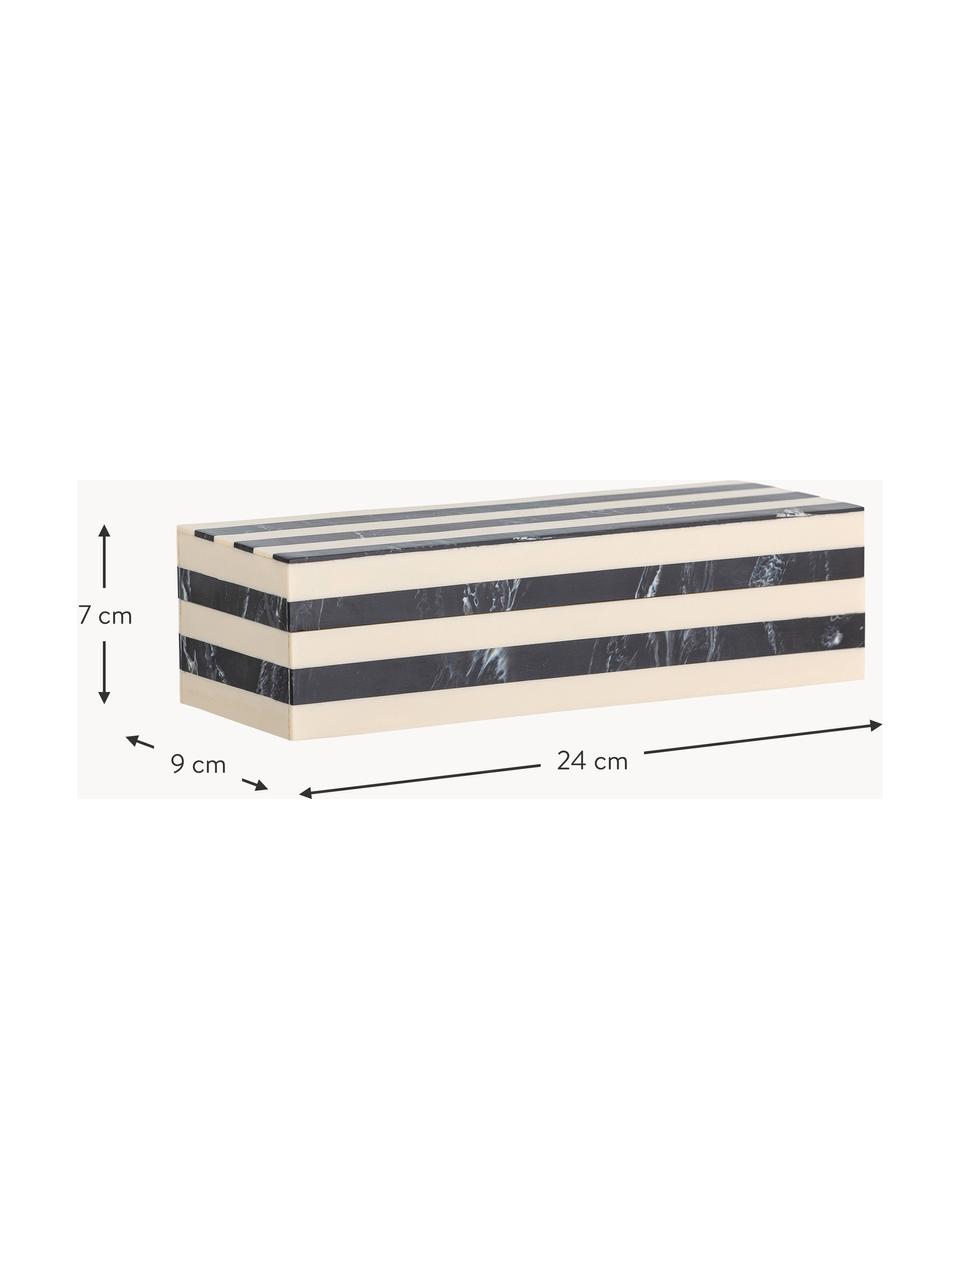 Skladovací box s víkem Hira, Dřevovláknitá deska střední hustoty (MDF), umělá pryskyřice, Tlumeně bílá, černá, Š 24 cm, H 9 cm